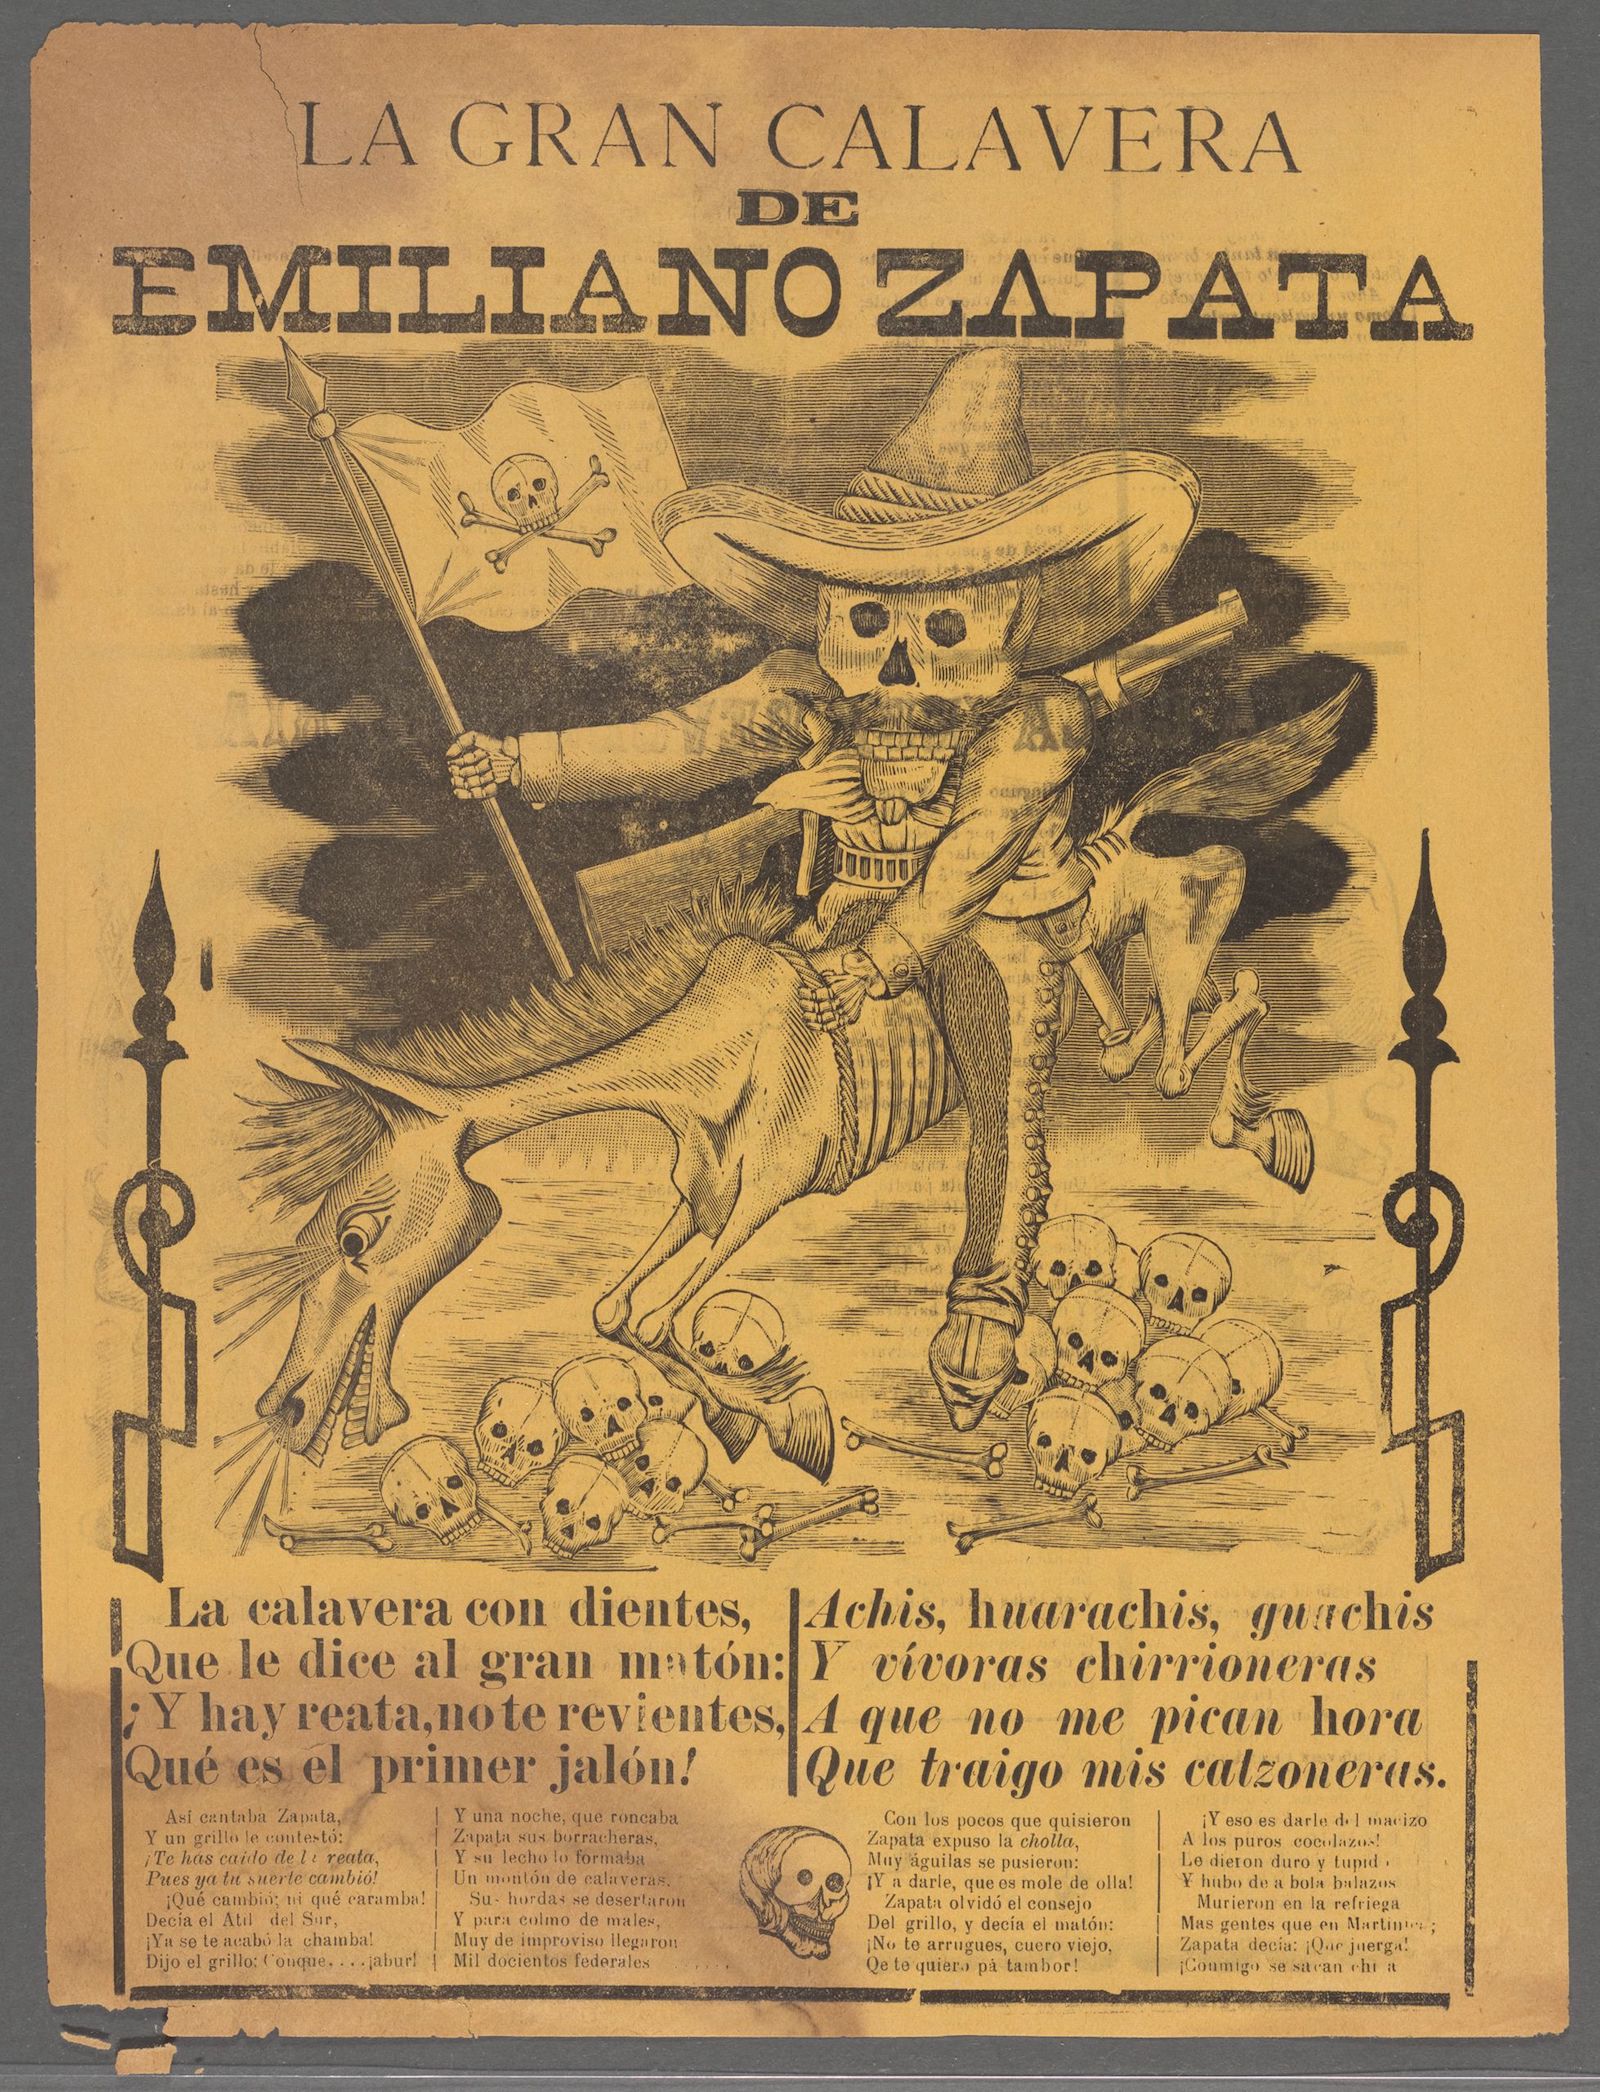 ‘La Gran Calavera de Emiliano Zapata’, a broadside from the Mexican Revolution, c. 1911. New York Public Library. Public Domain.